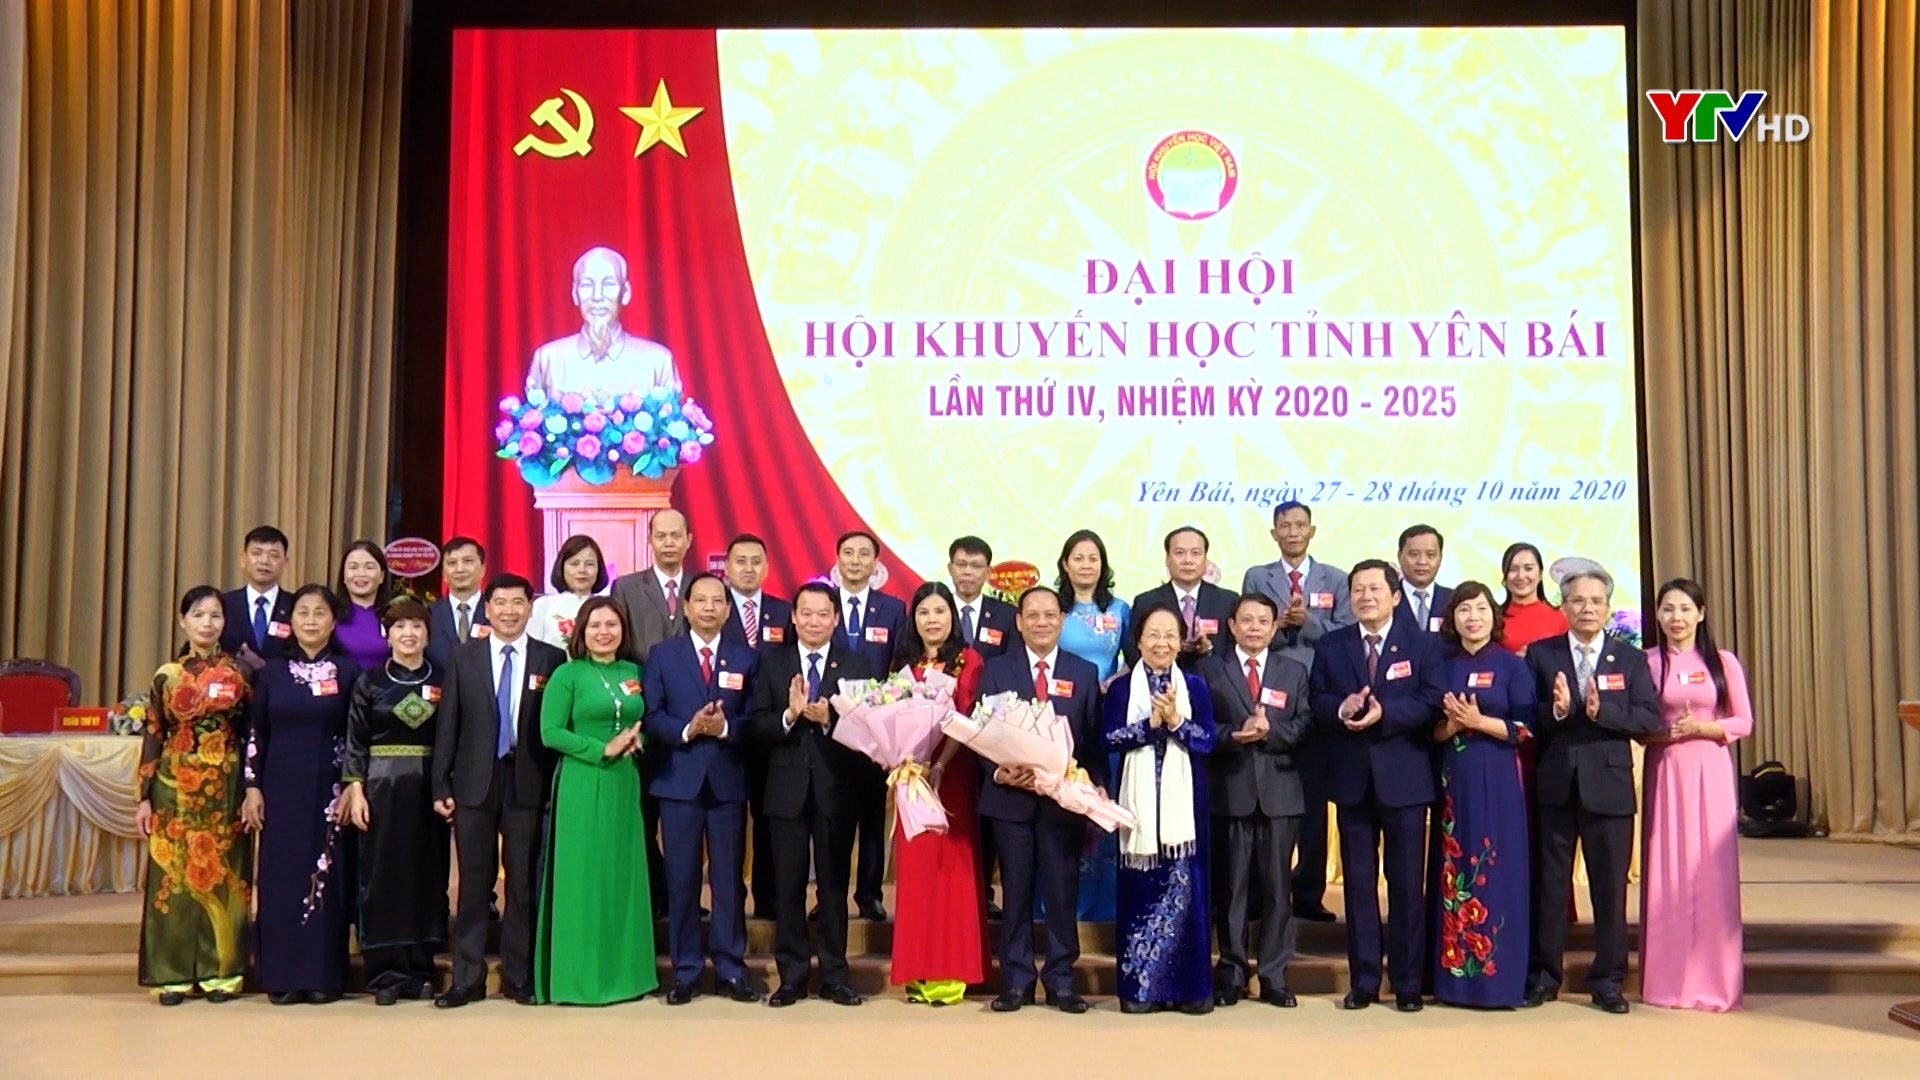 Hội Khuyến học tỉnh Yên Bái tổ chức thành công Đại hội lần thứ IV, nhiệm kỳ 2020-2025